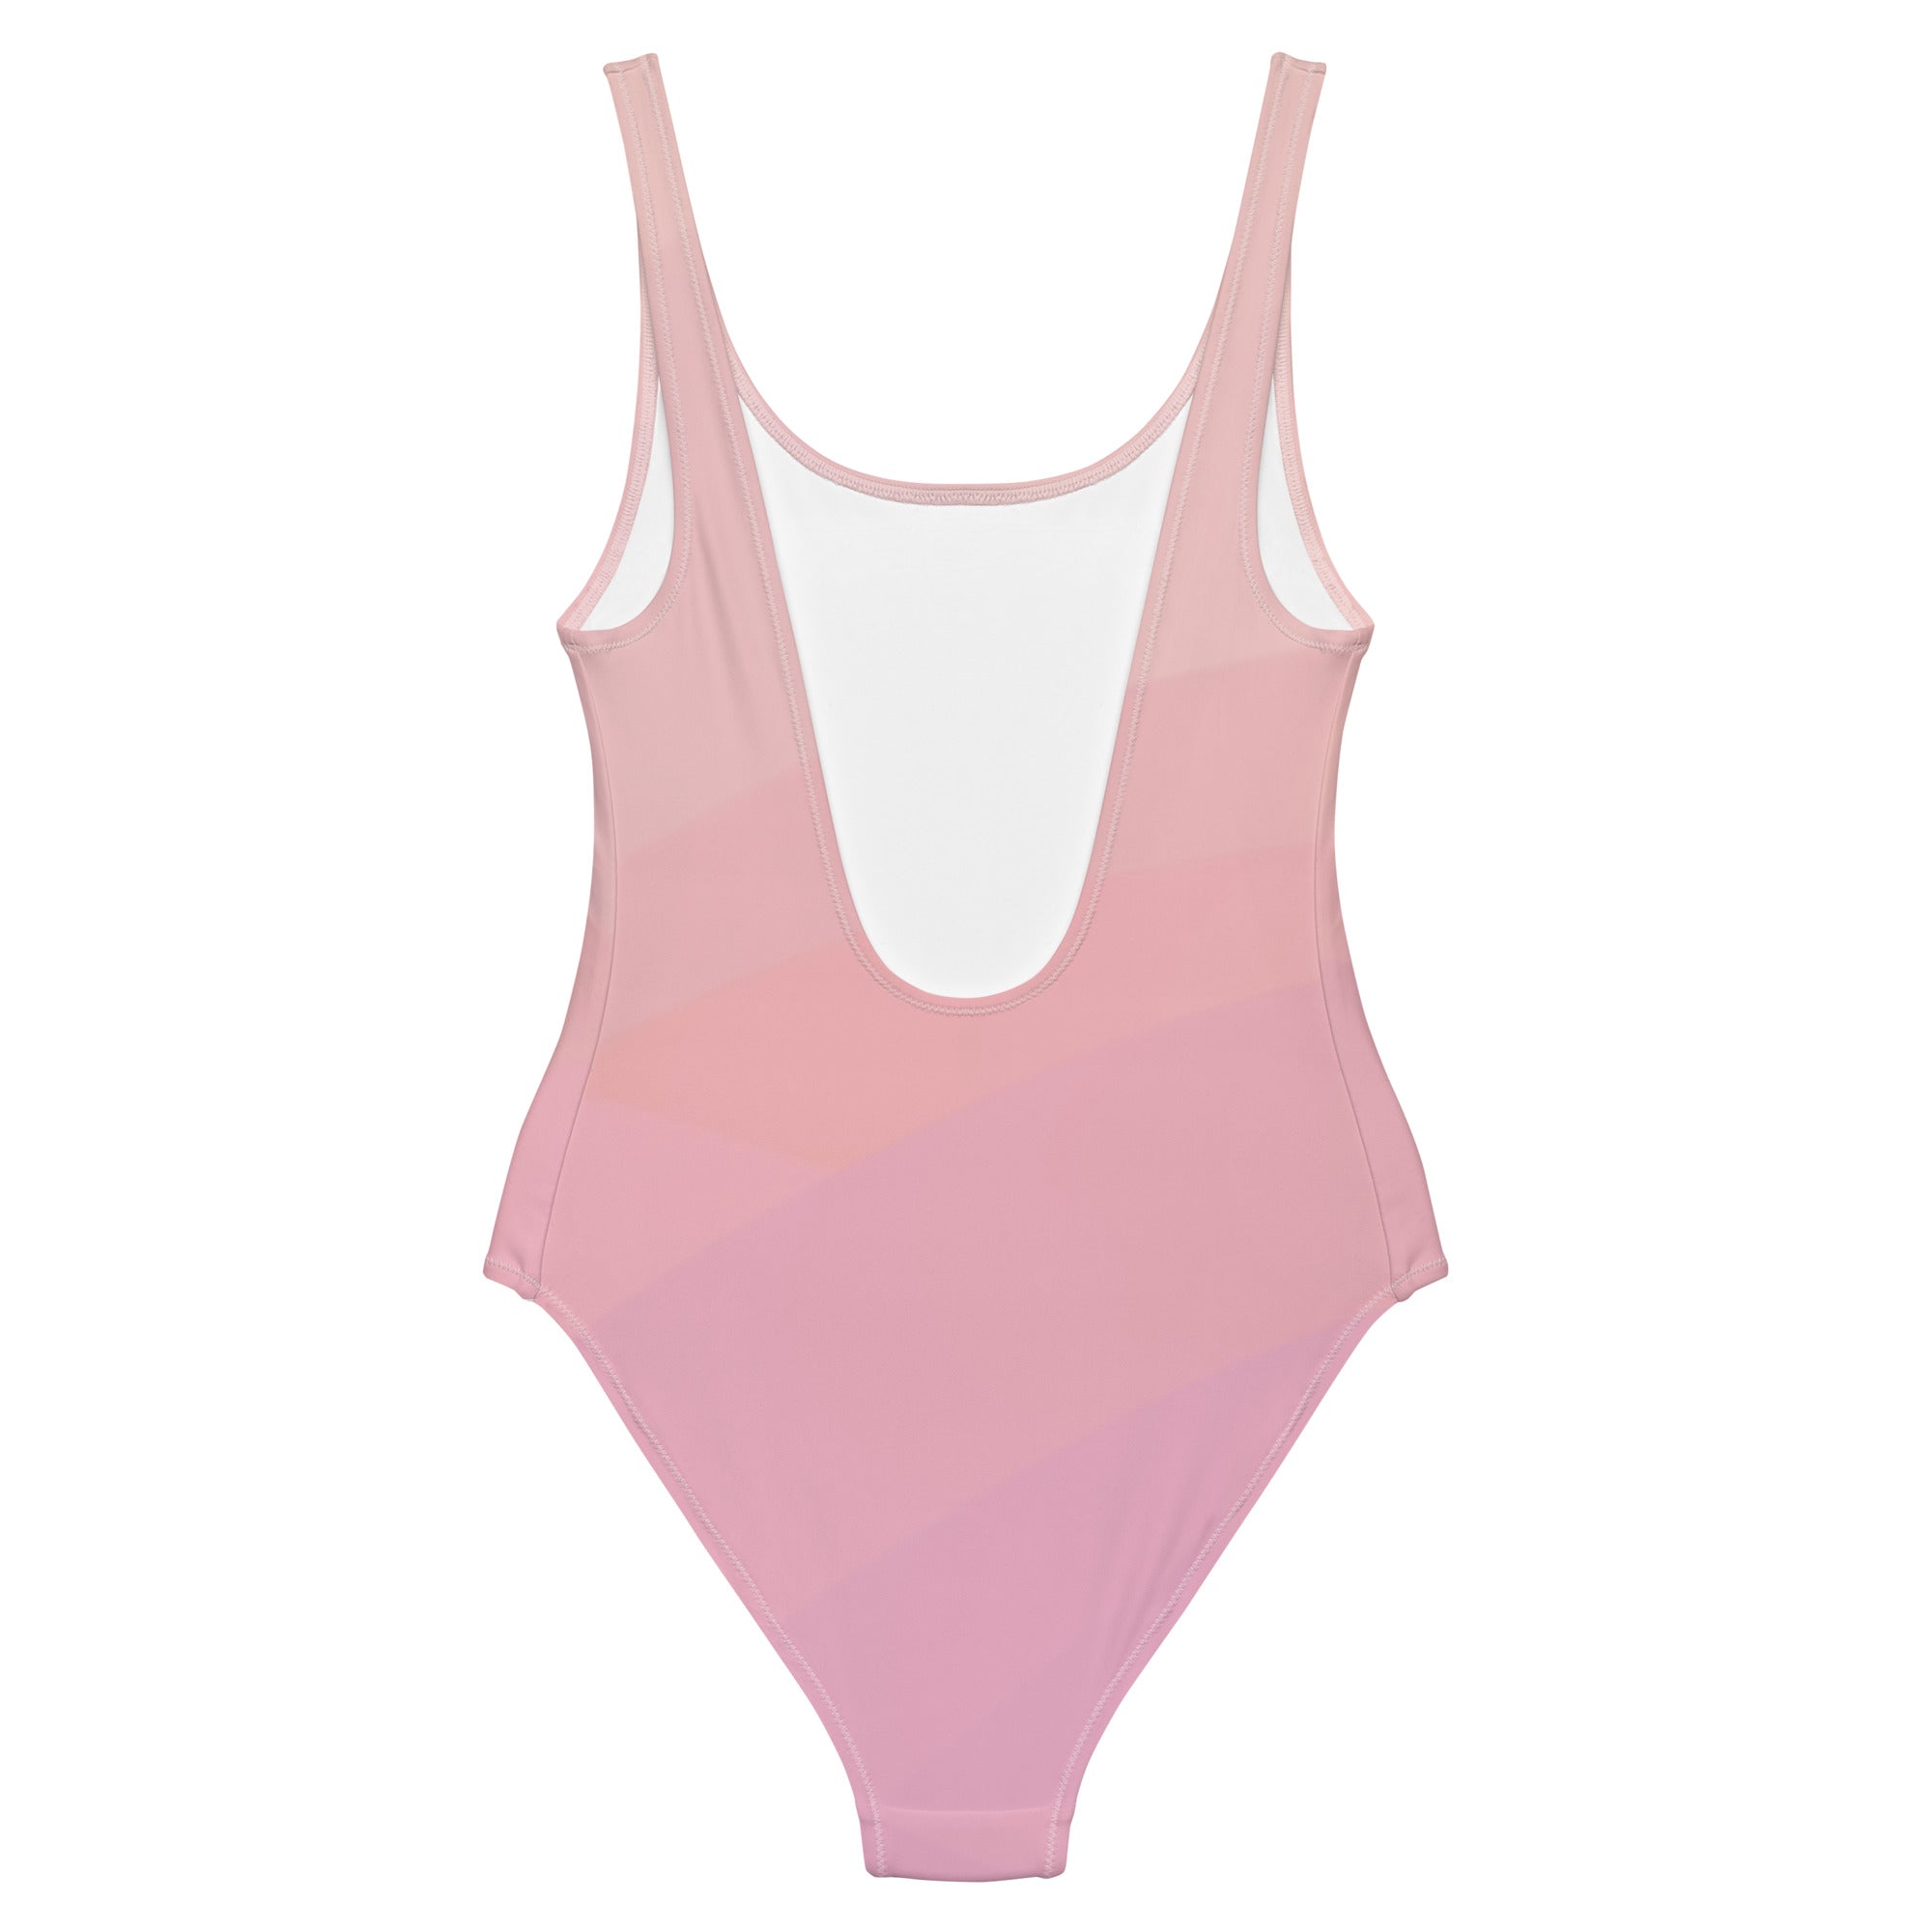 Light pink stripe print swimsuit for women